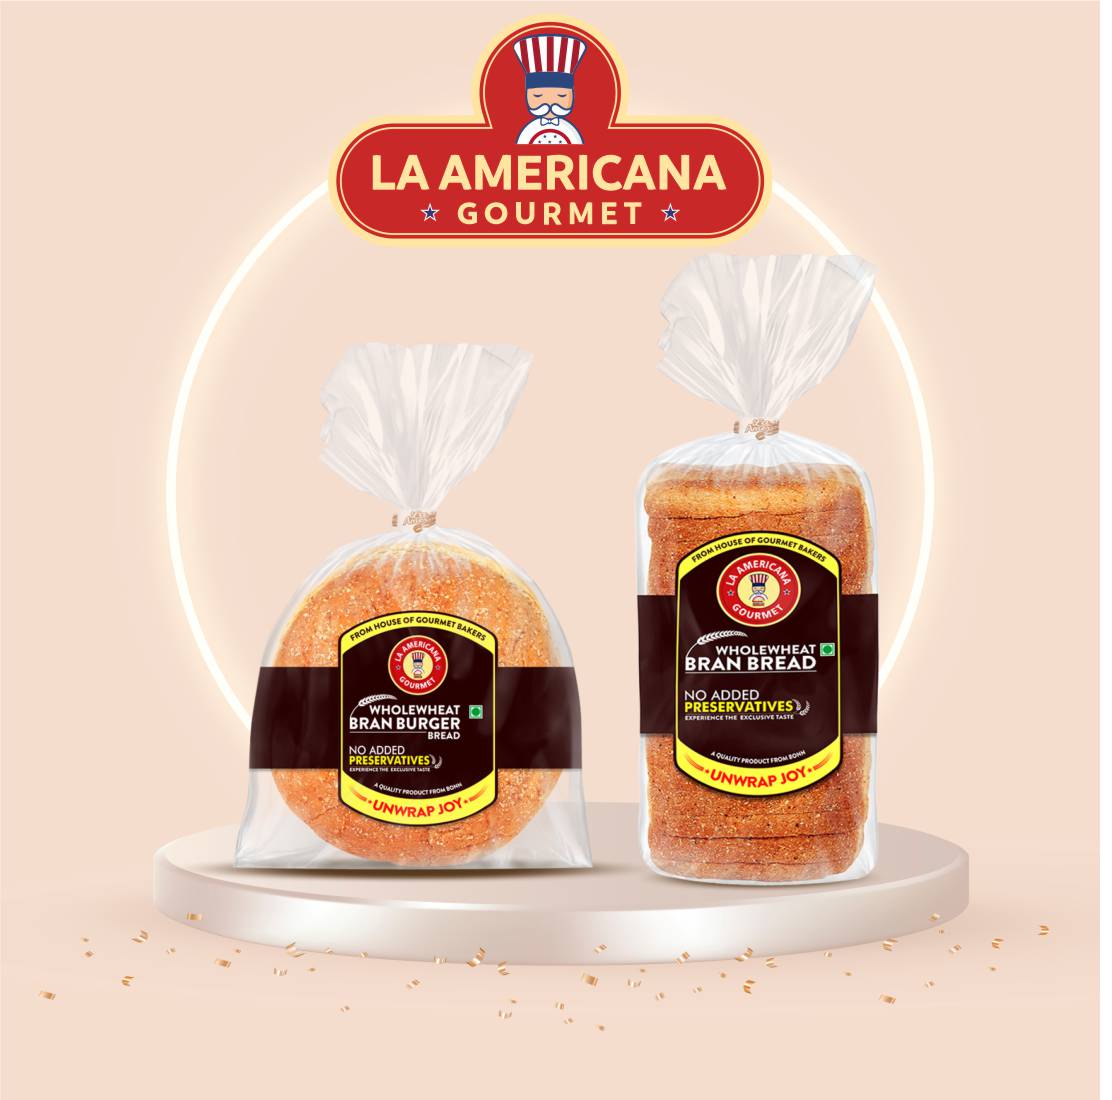 La Americana Wholewheat BRAN BREAD 350g, and La Americana Wholewheat Bran Burger 150g, (Pack of 1 each)